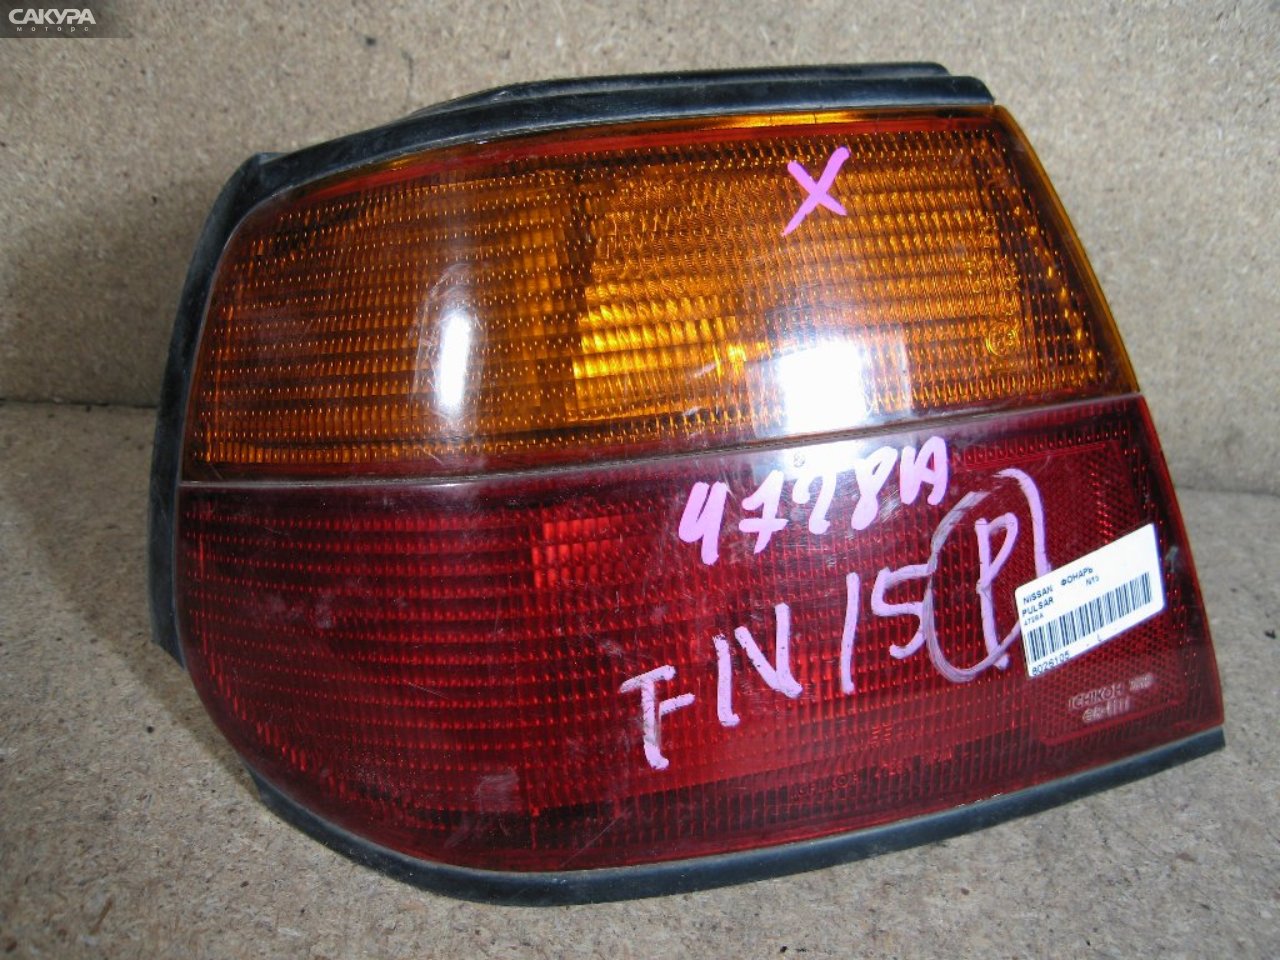 Фонарь стоп-сигнала левый Nissan Pulsar FN15 4728: купить в Сакура Абакан.